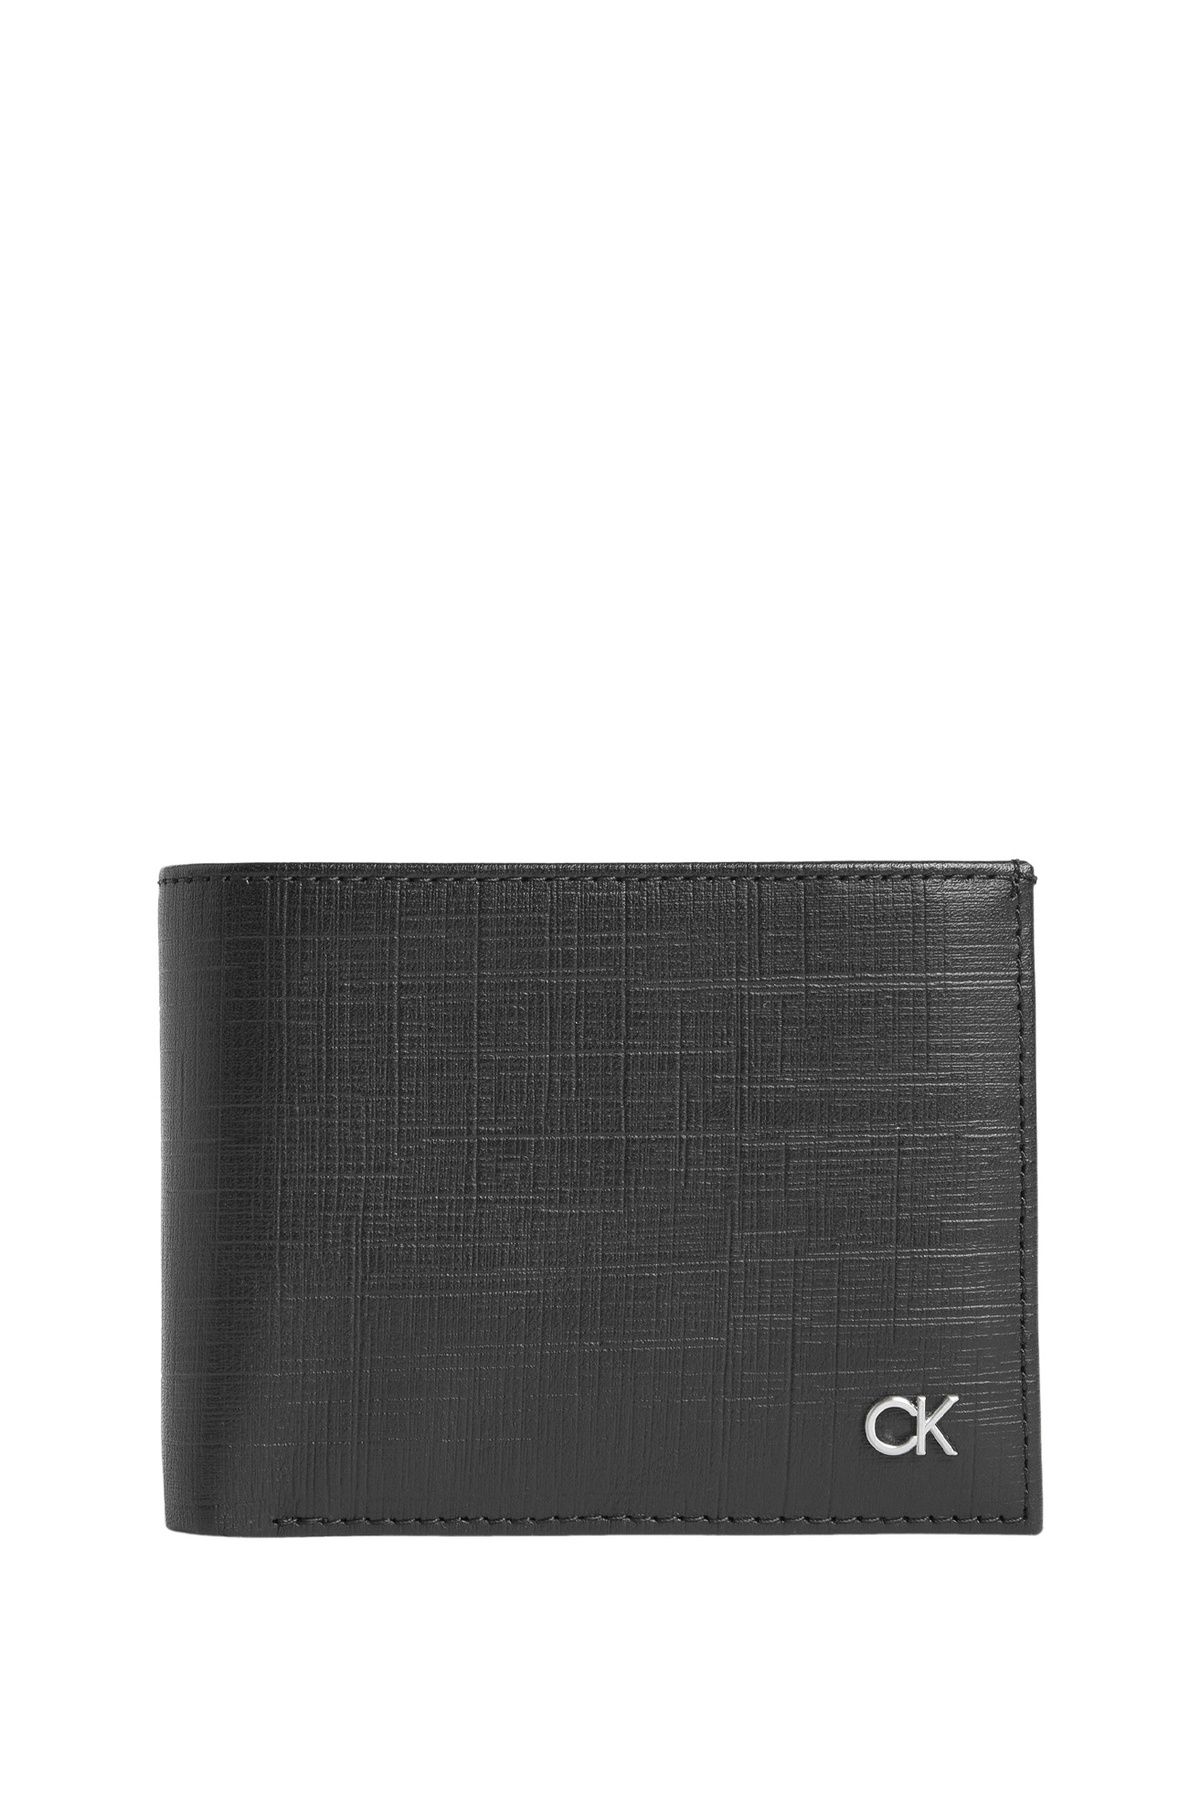 Calvin Klein Siyah Erkek Cüzdan CK MUST BIFOLD 5CC W/COIN Fiyatı, Yorumları  - Trendyol